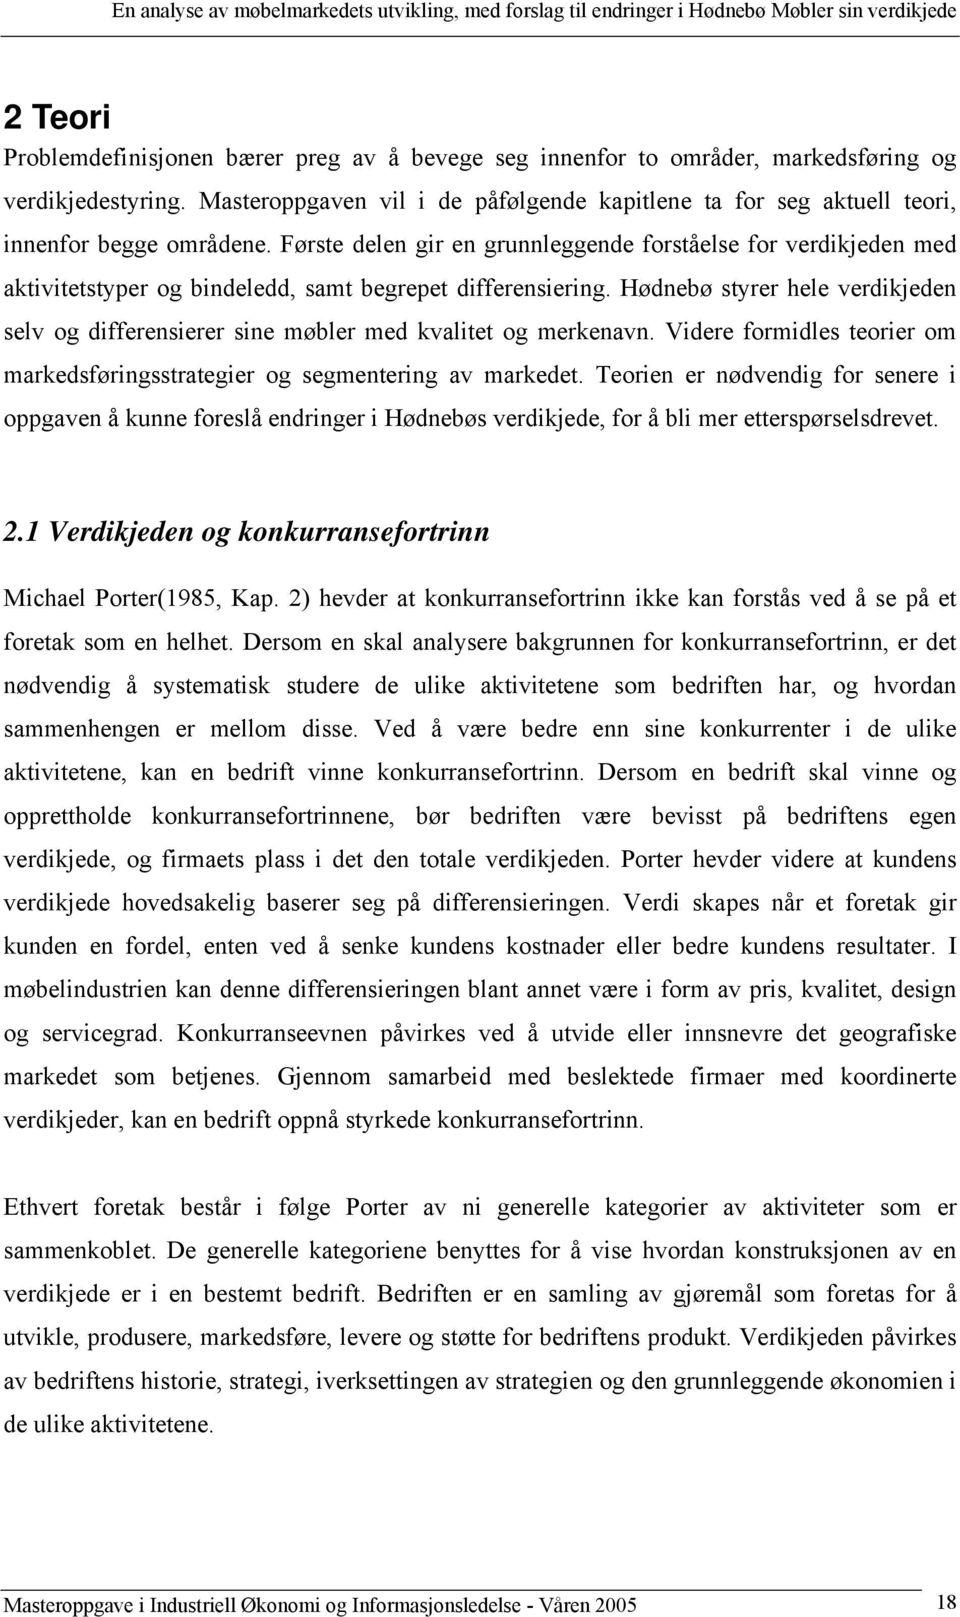 En analyse av møbelmarkedets utvikling, med forslag til endringer i Hødnebø  Møbler sin verdikjede - PDF Gratis nedlasting